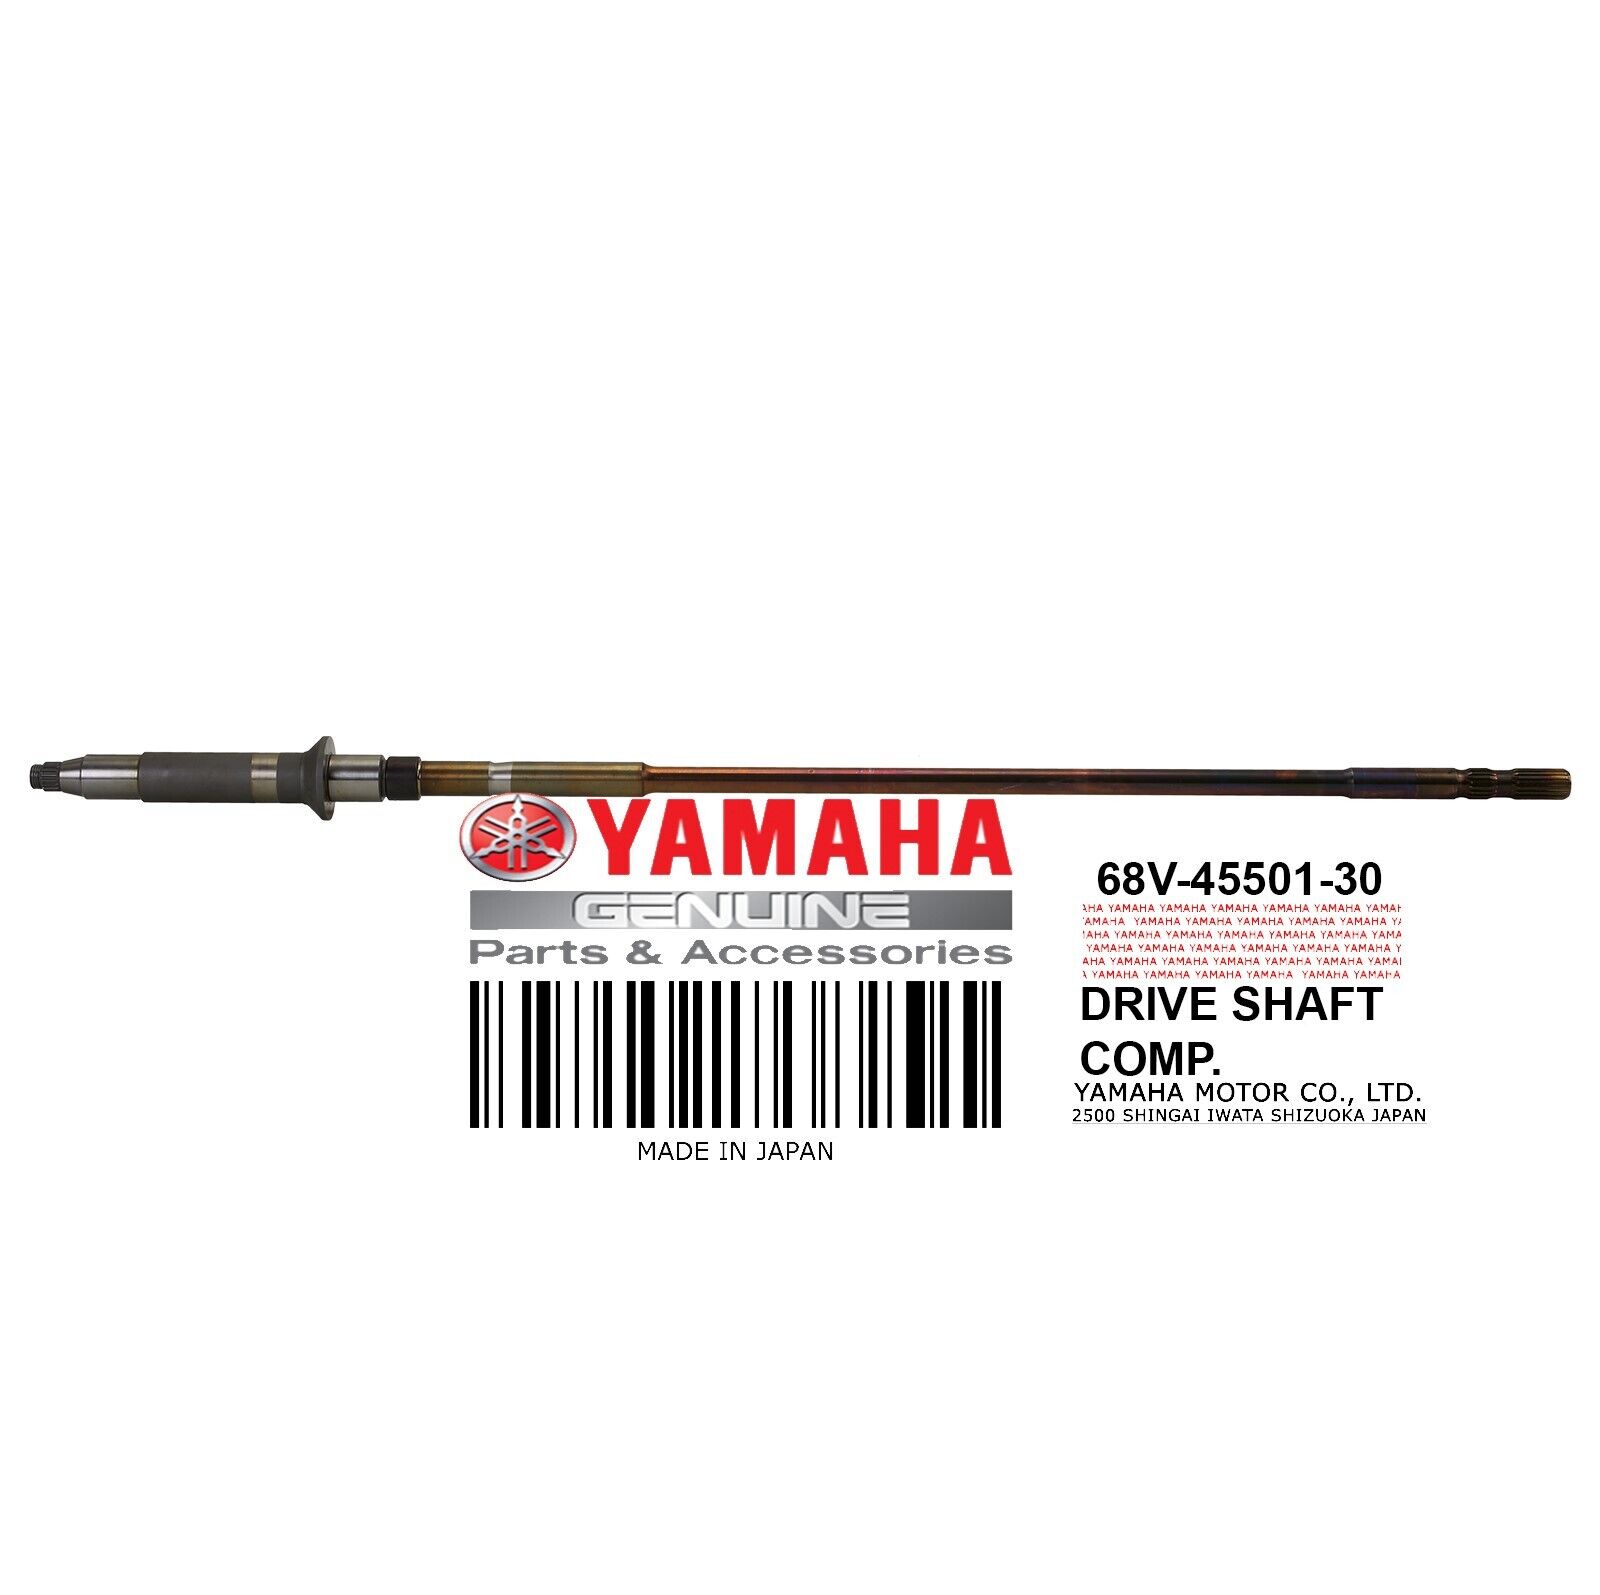 Yamaha OEM DRIVE SHAFT COMP 68V-45501-30-00